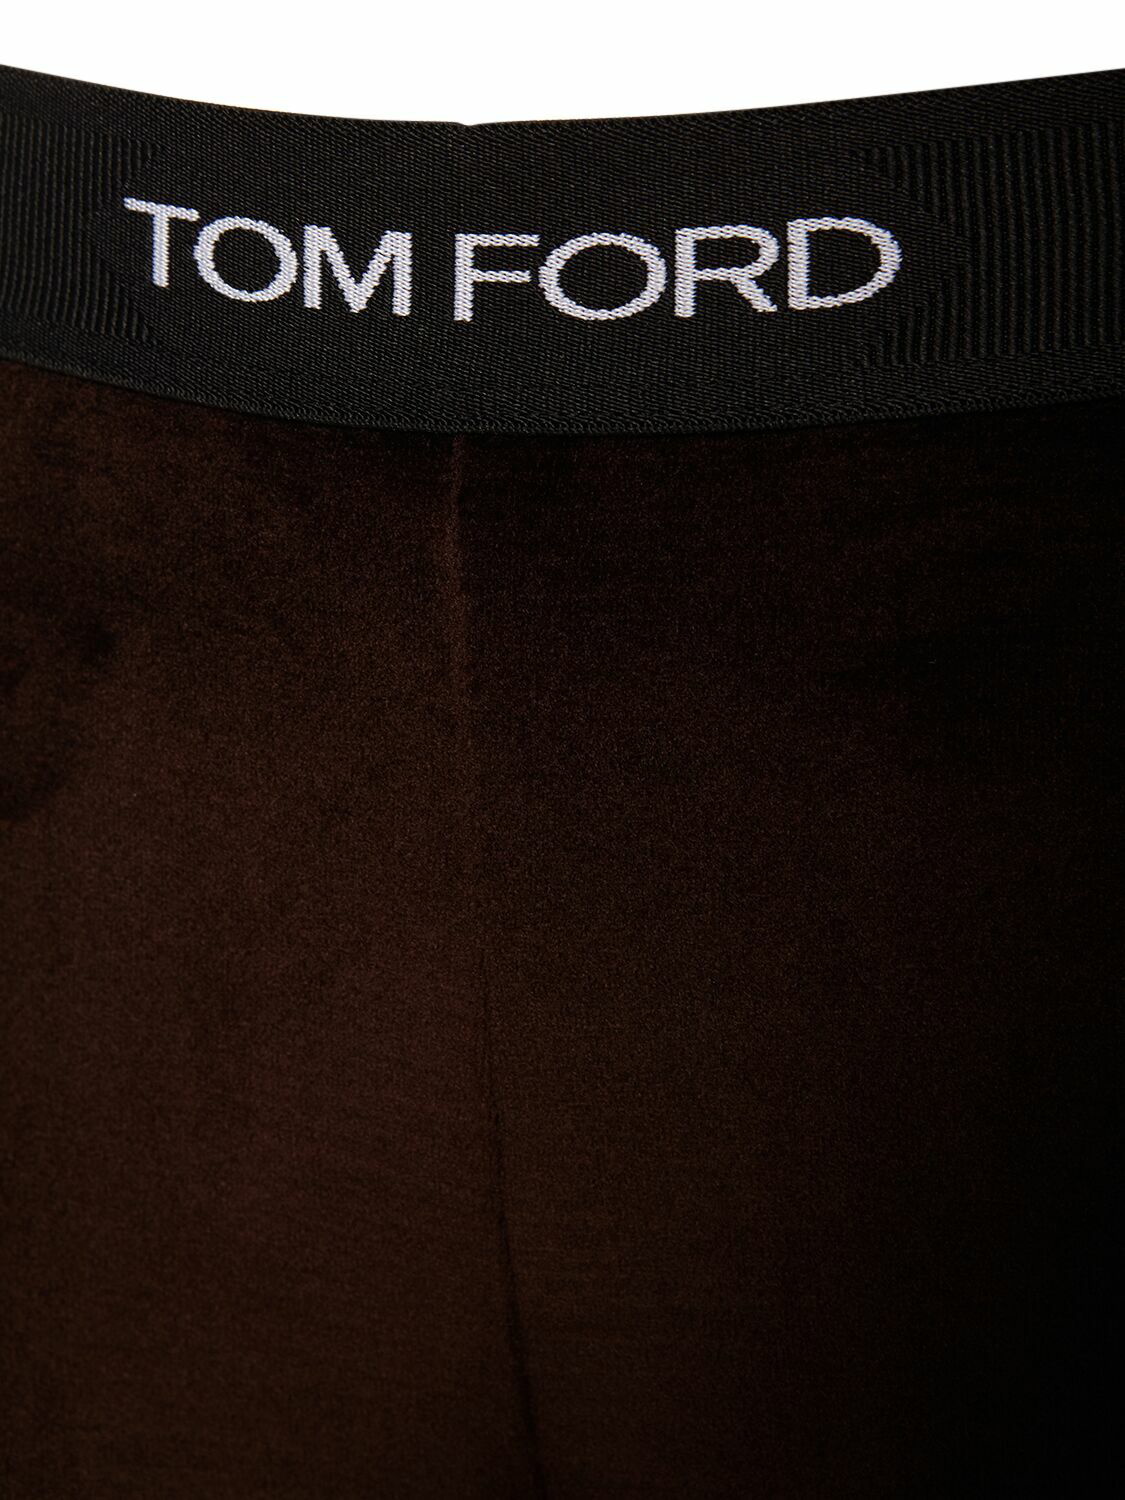 TOM FORD - Logo Stretch Velvet Leggings TOM FORD